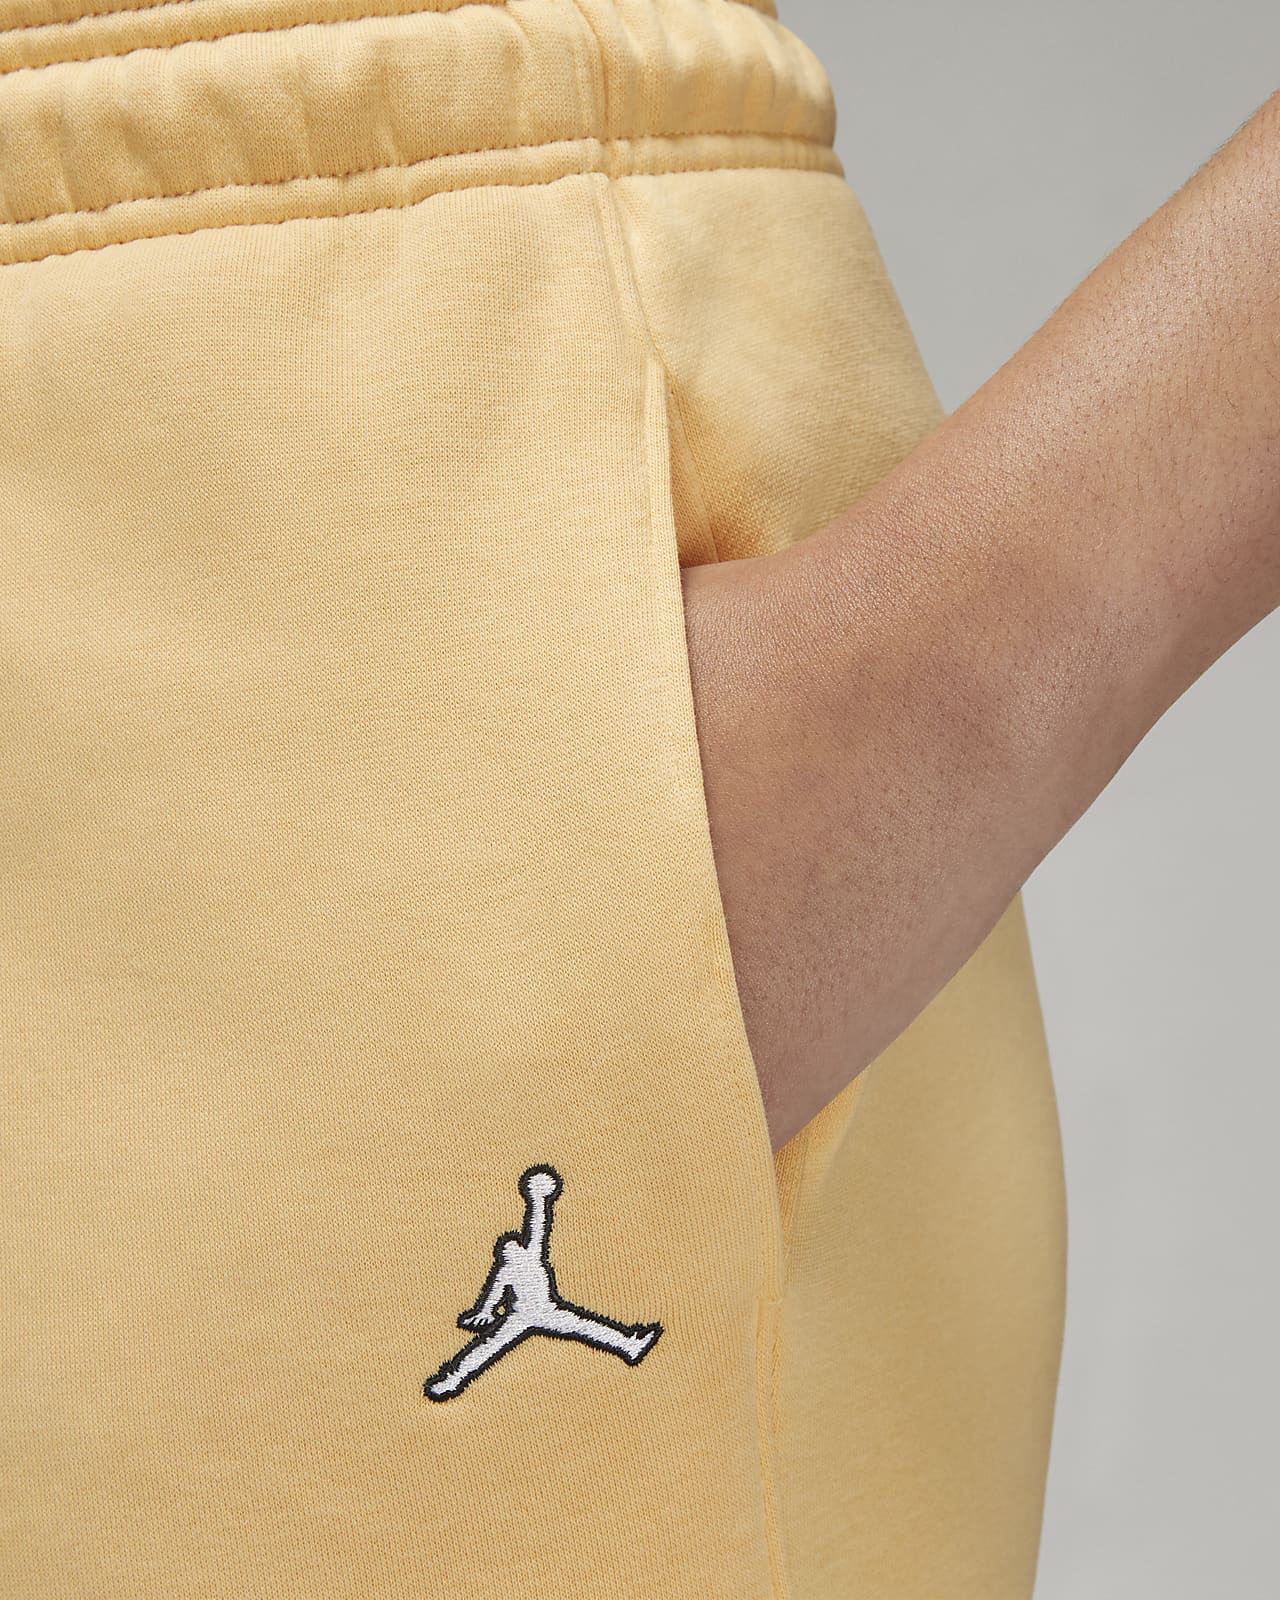  Nike Air Jordan Brooklyn Fleece Men's Pants, Black